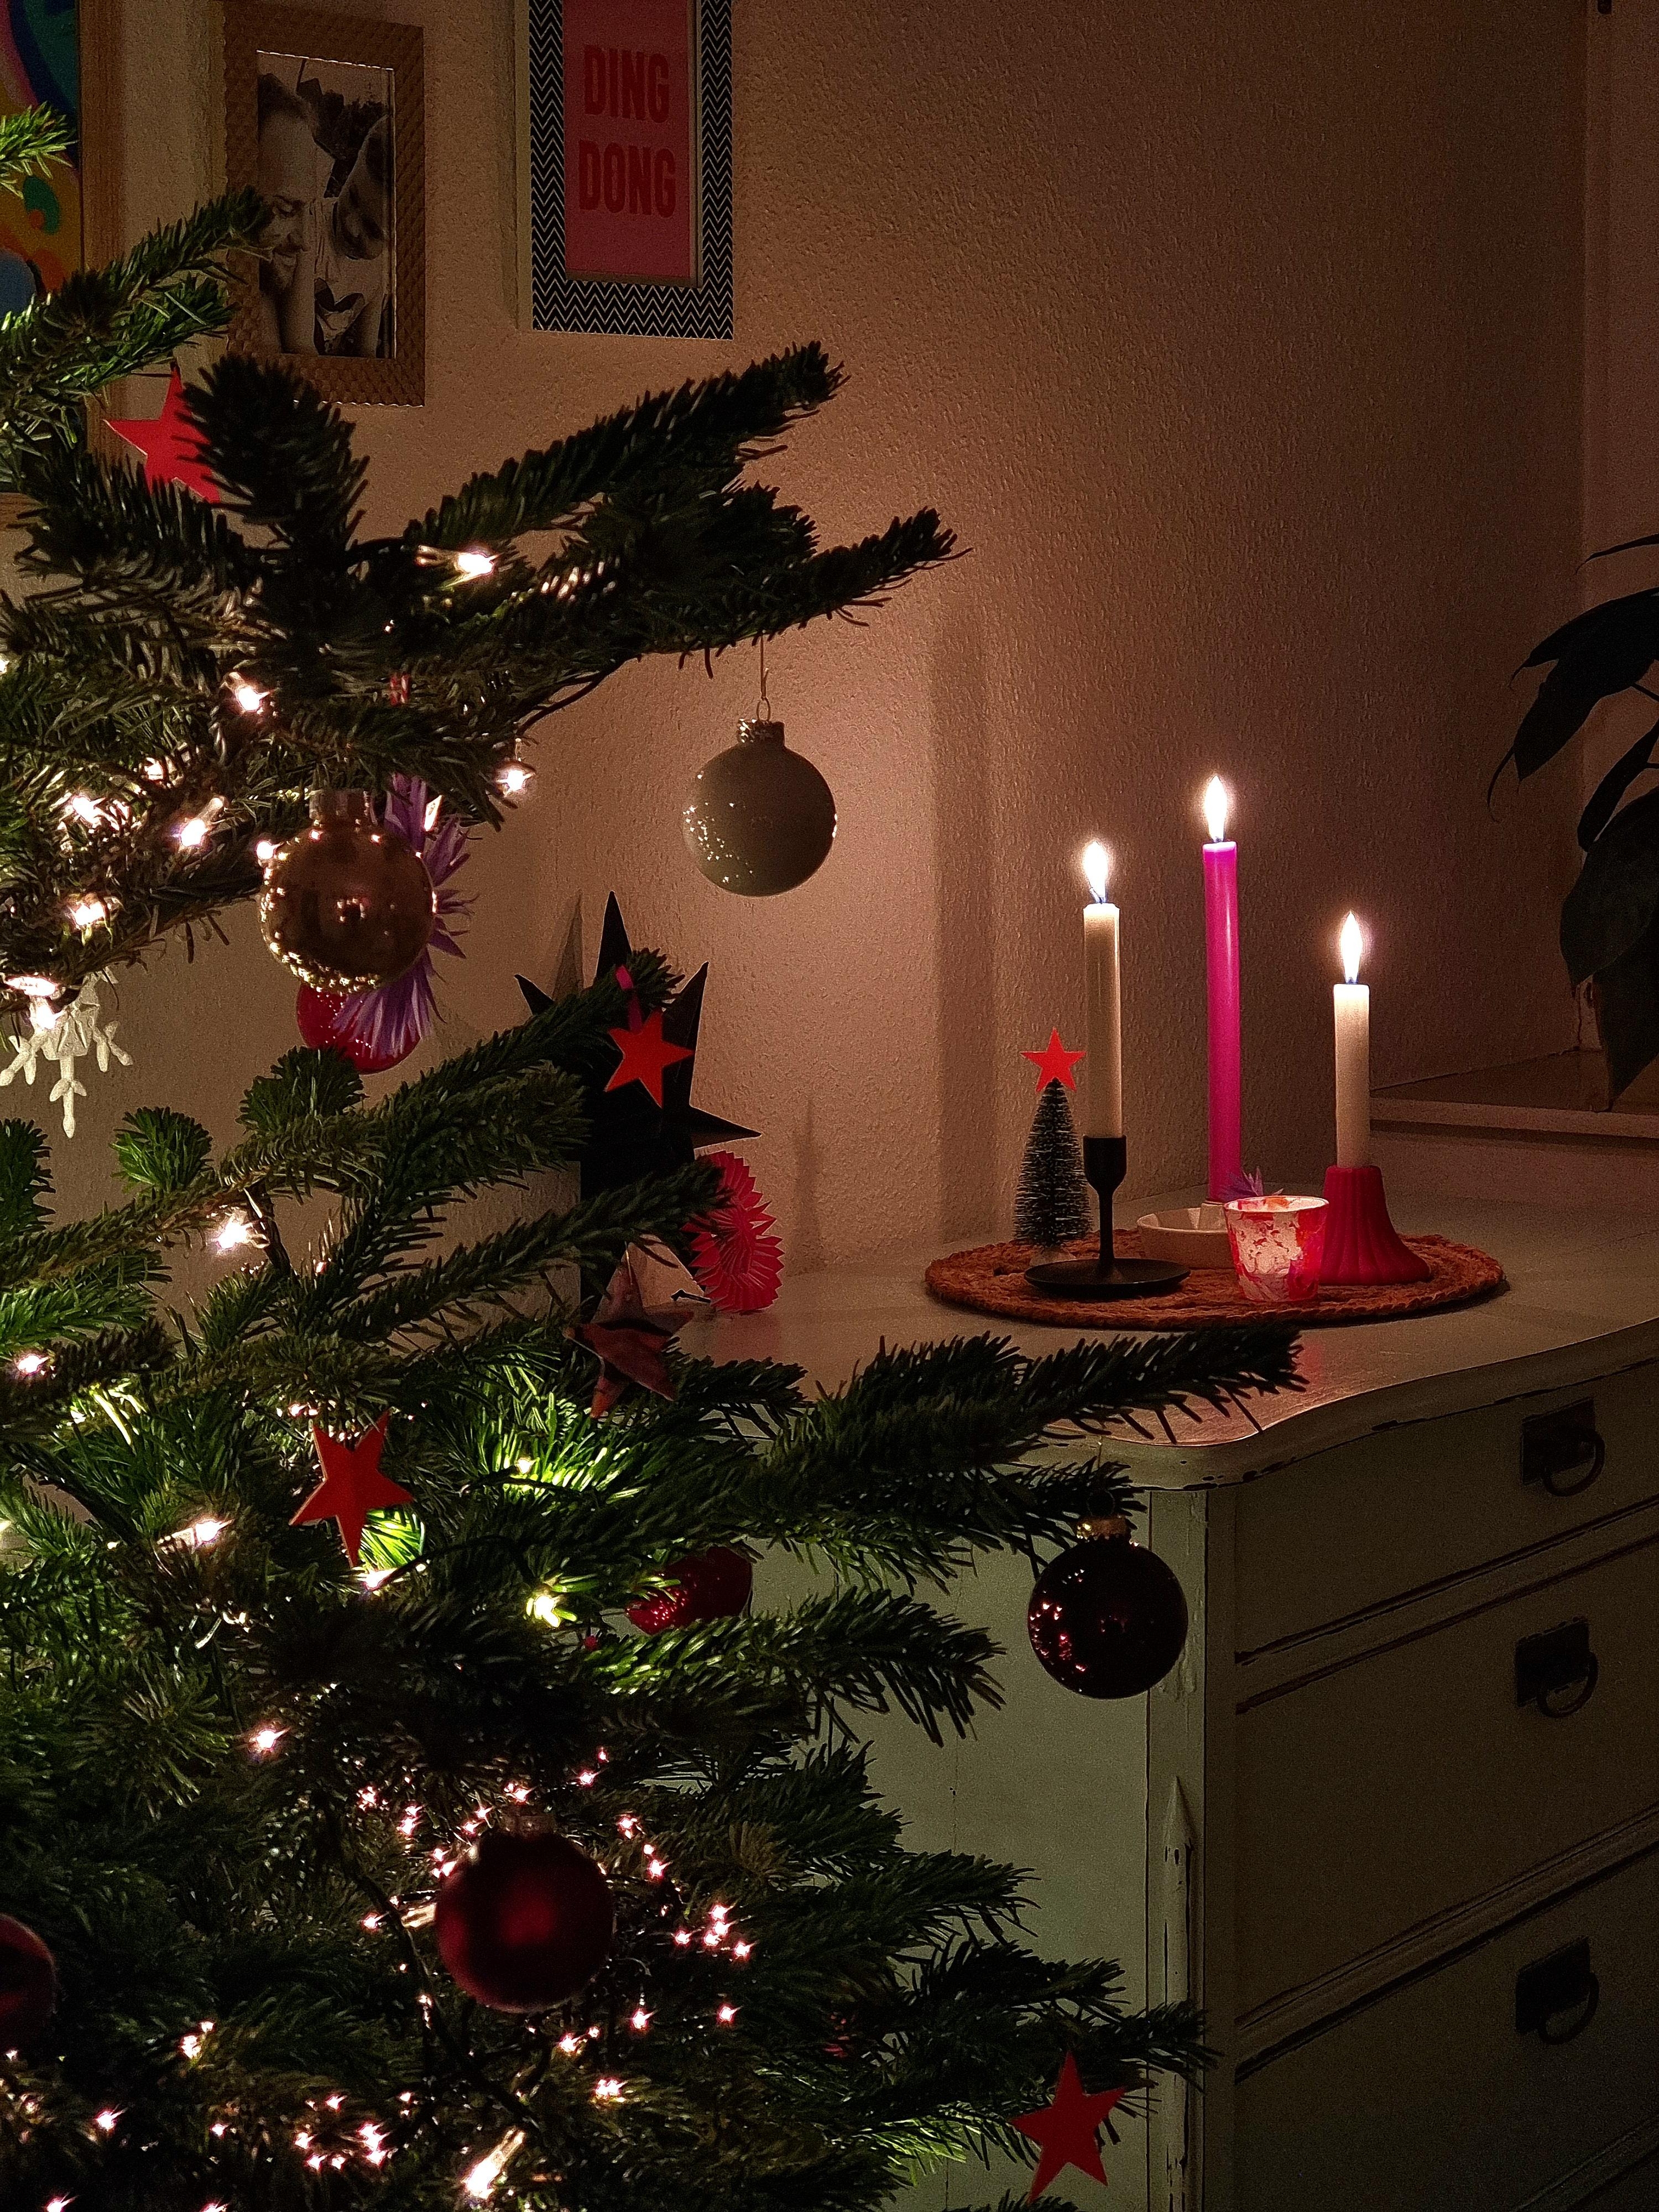 ⭐️Frohe Weihnachten⭐️ #froheweihnachten #weihnachtsbaum #heiligabend #merrychristmas #tannenbaum #cozy #kerzenlicht #🎄